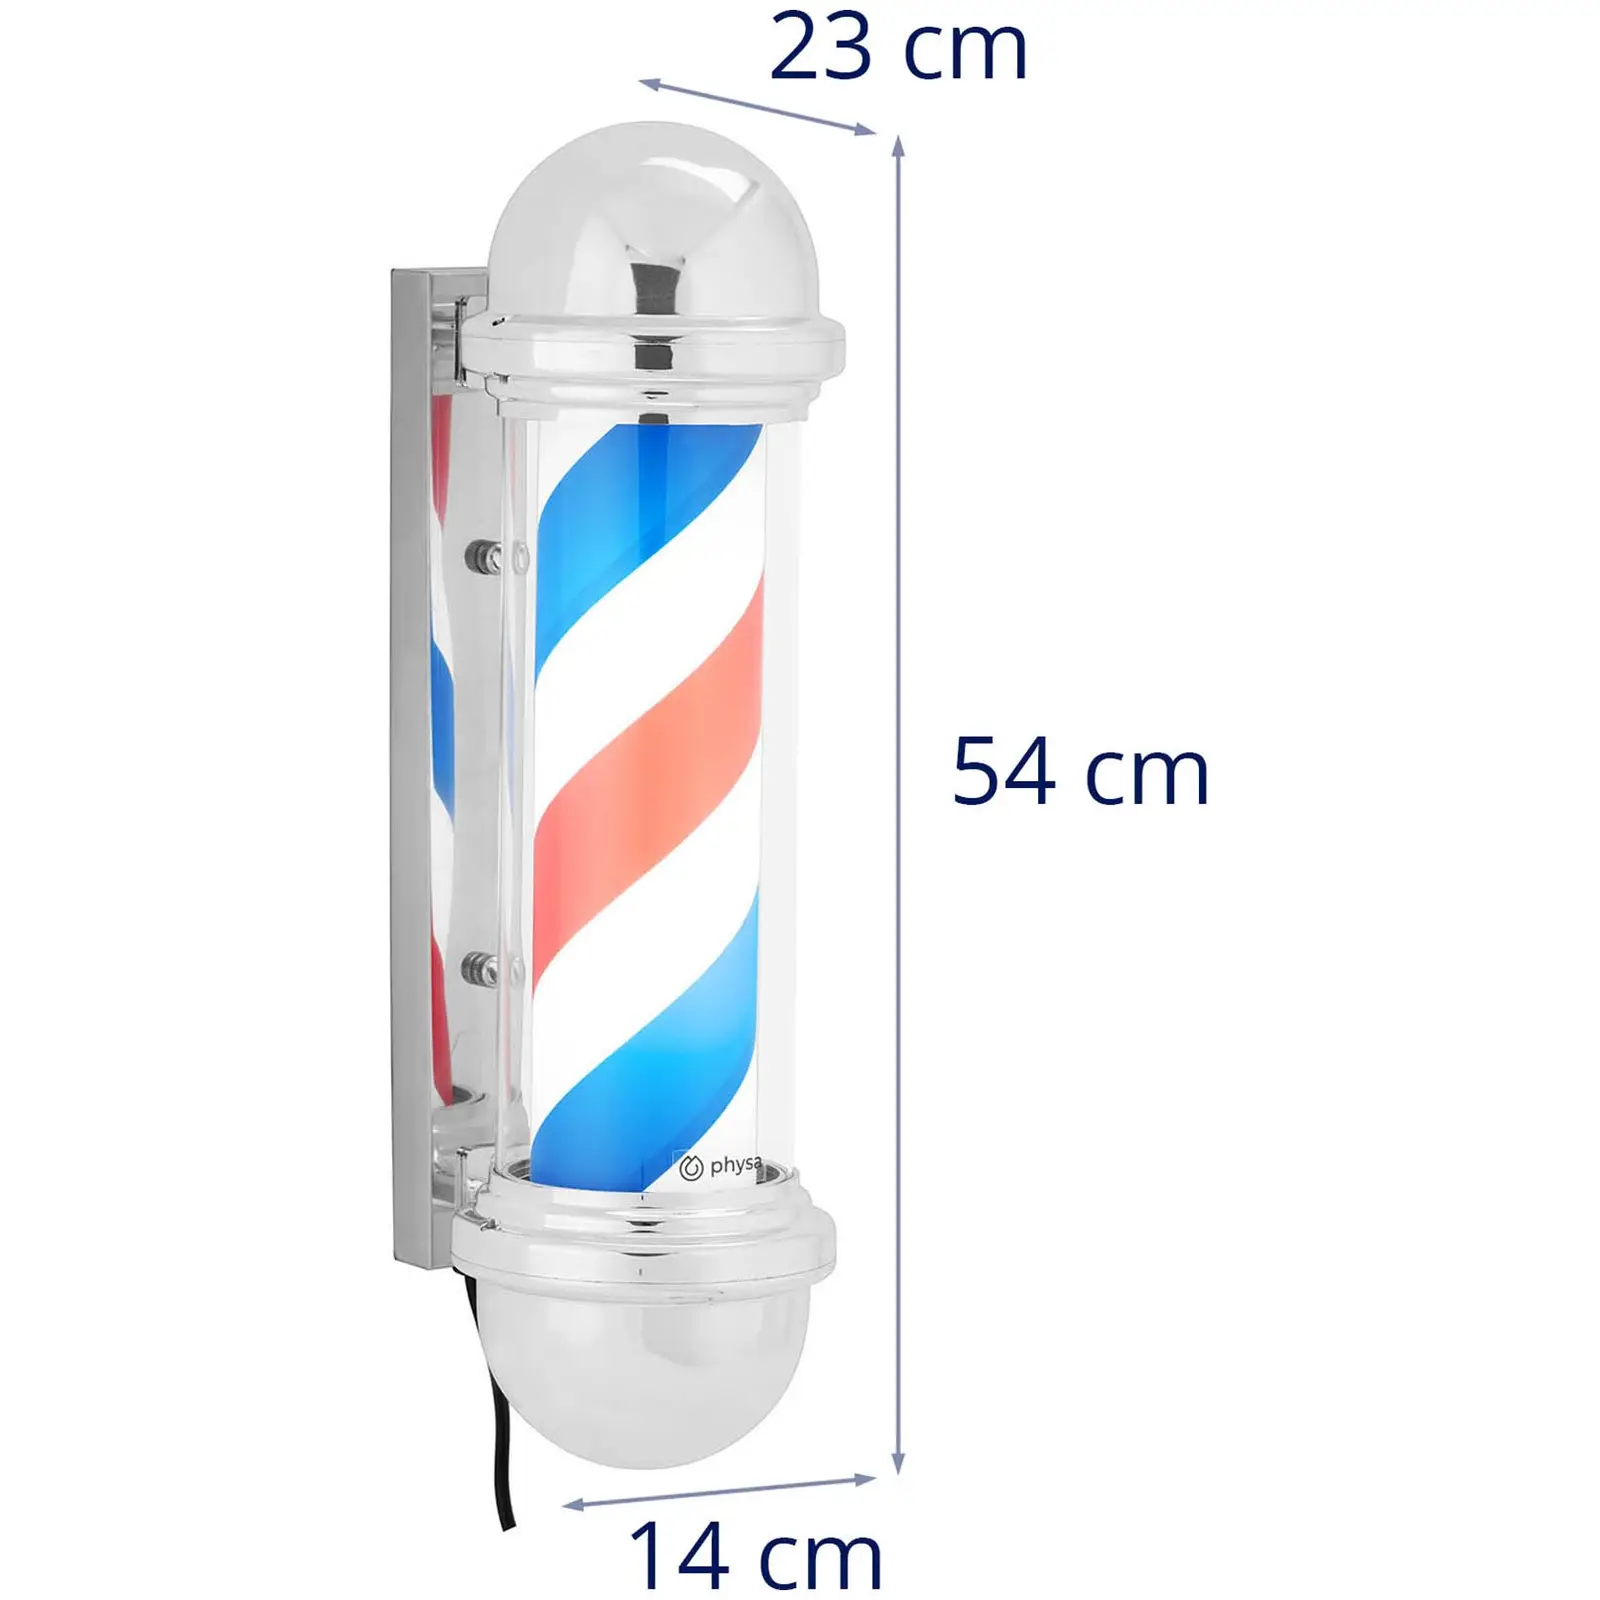 Enseigne de barbier - rotatif et éclairé - 300 mm de hauteur - 22 cm de distance au mur - support argenté